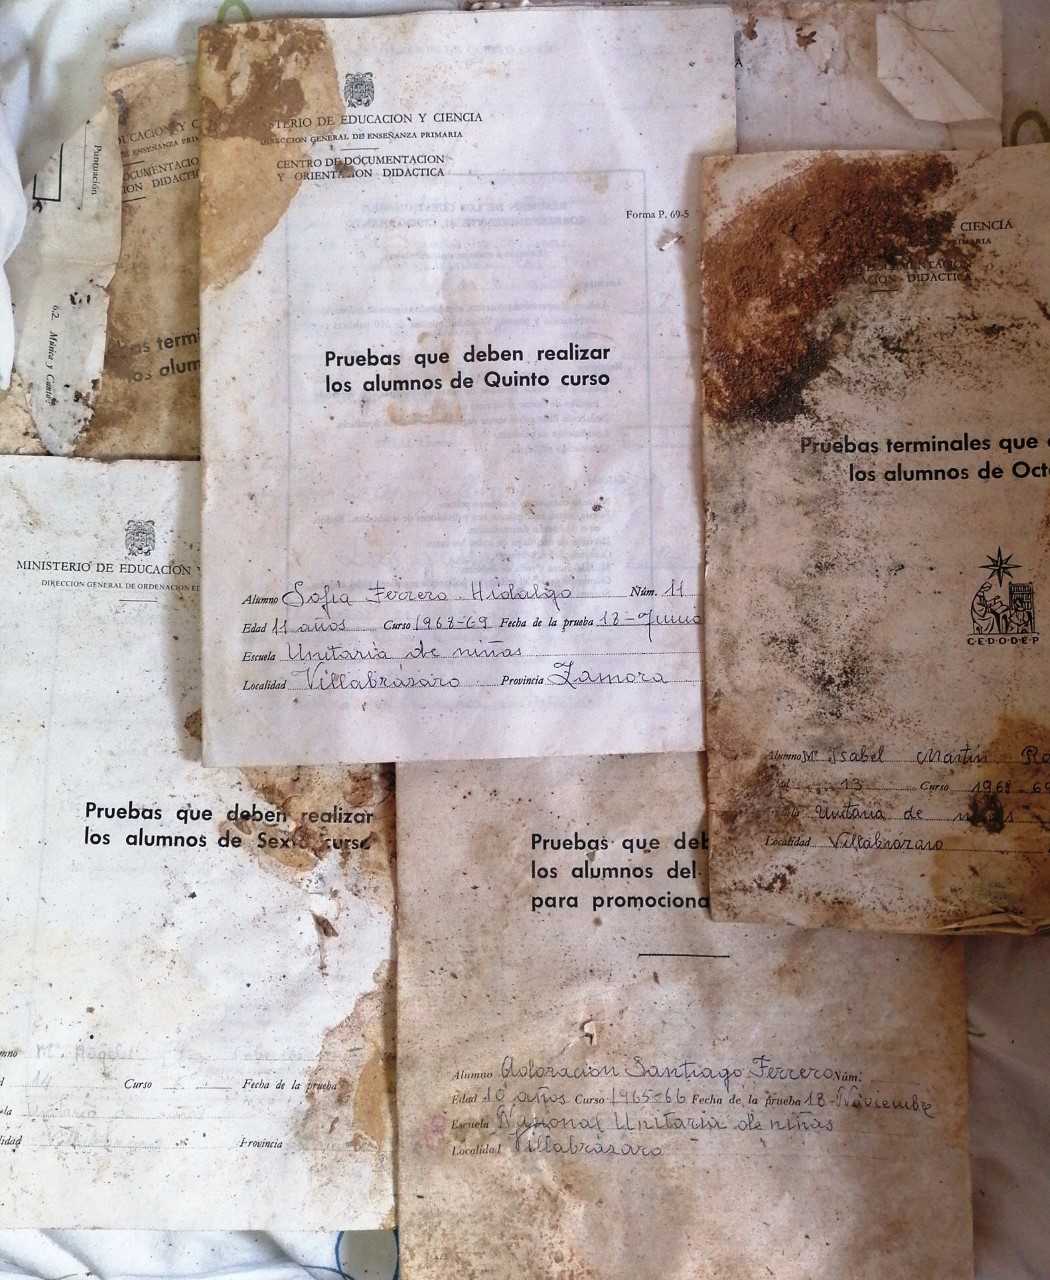 Documentos recuperados en Villabrázaro